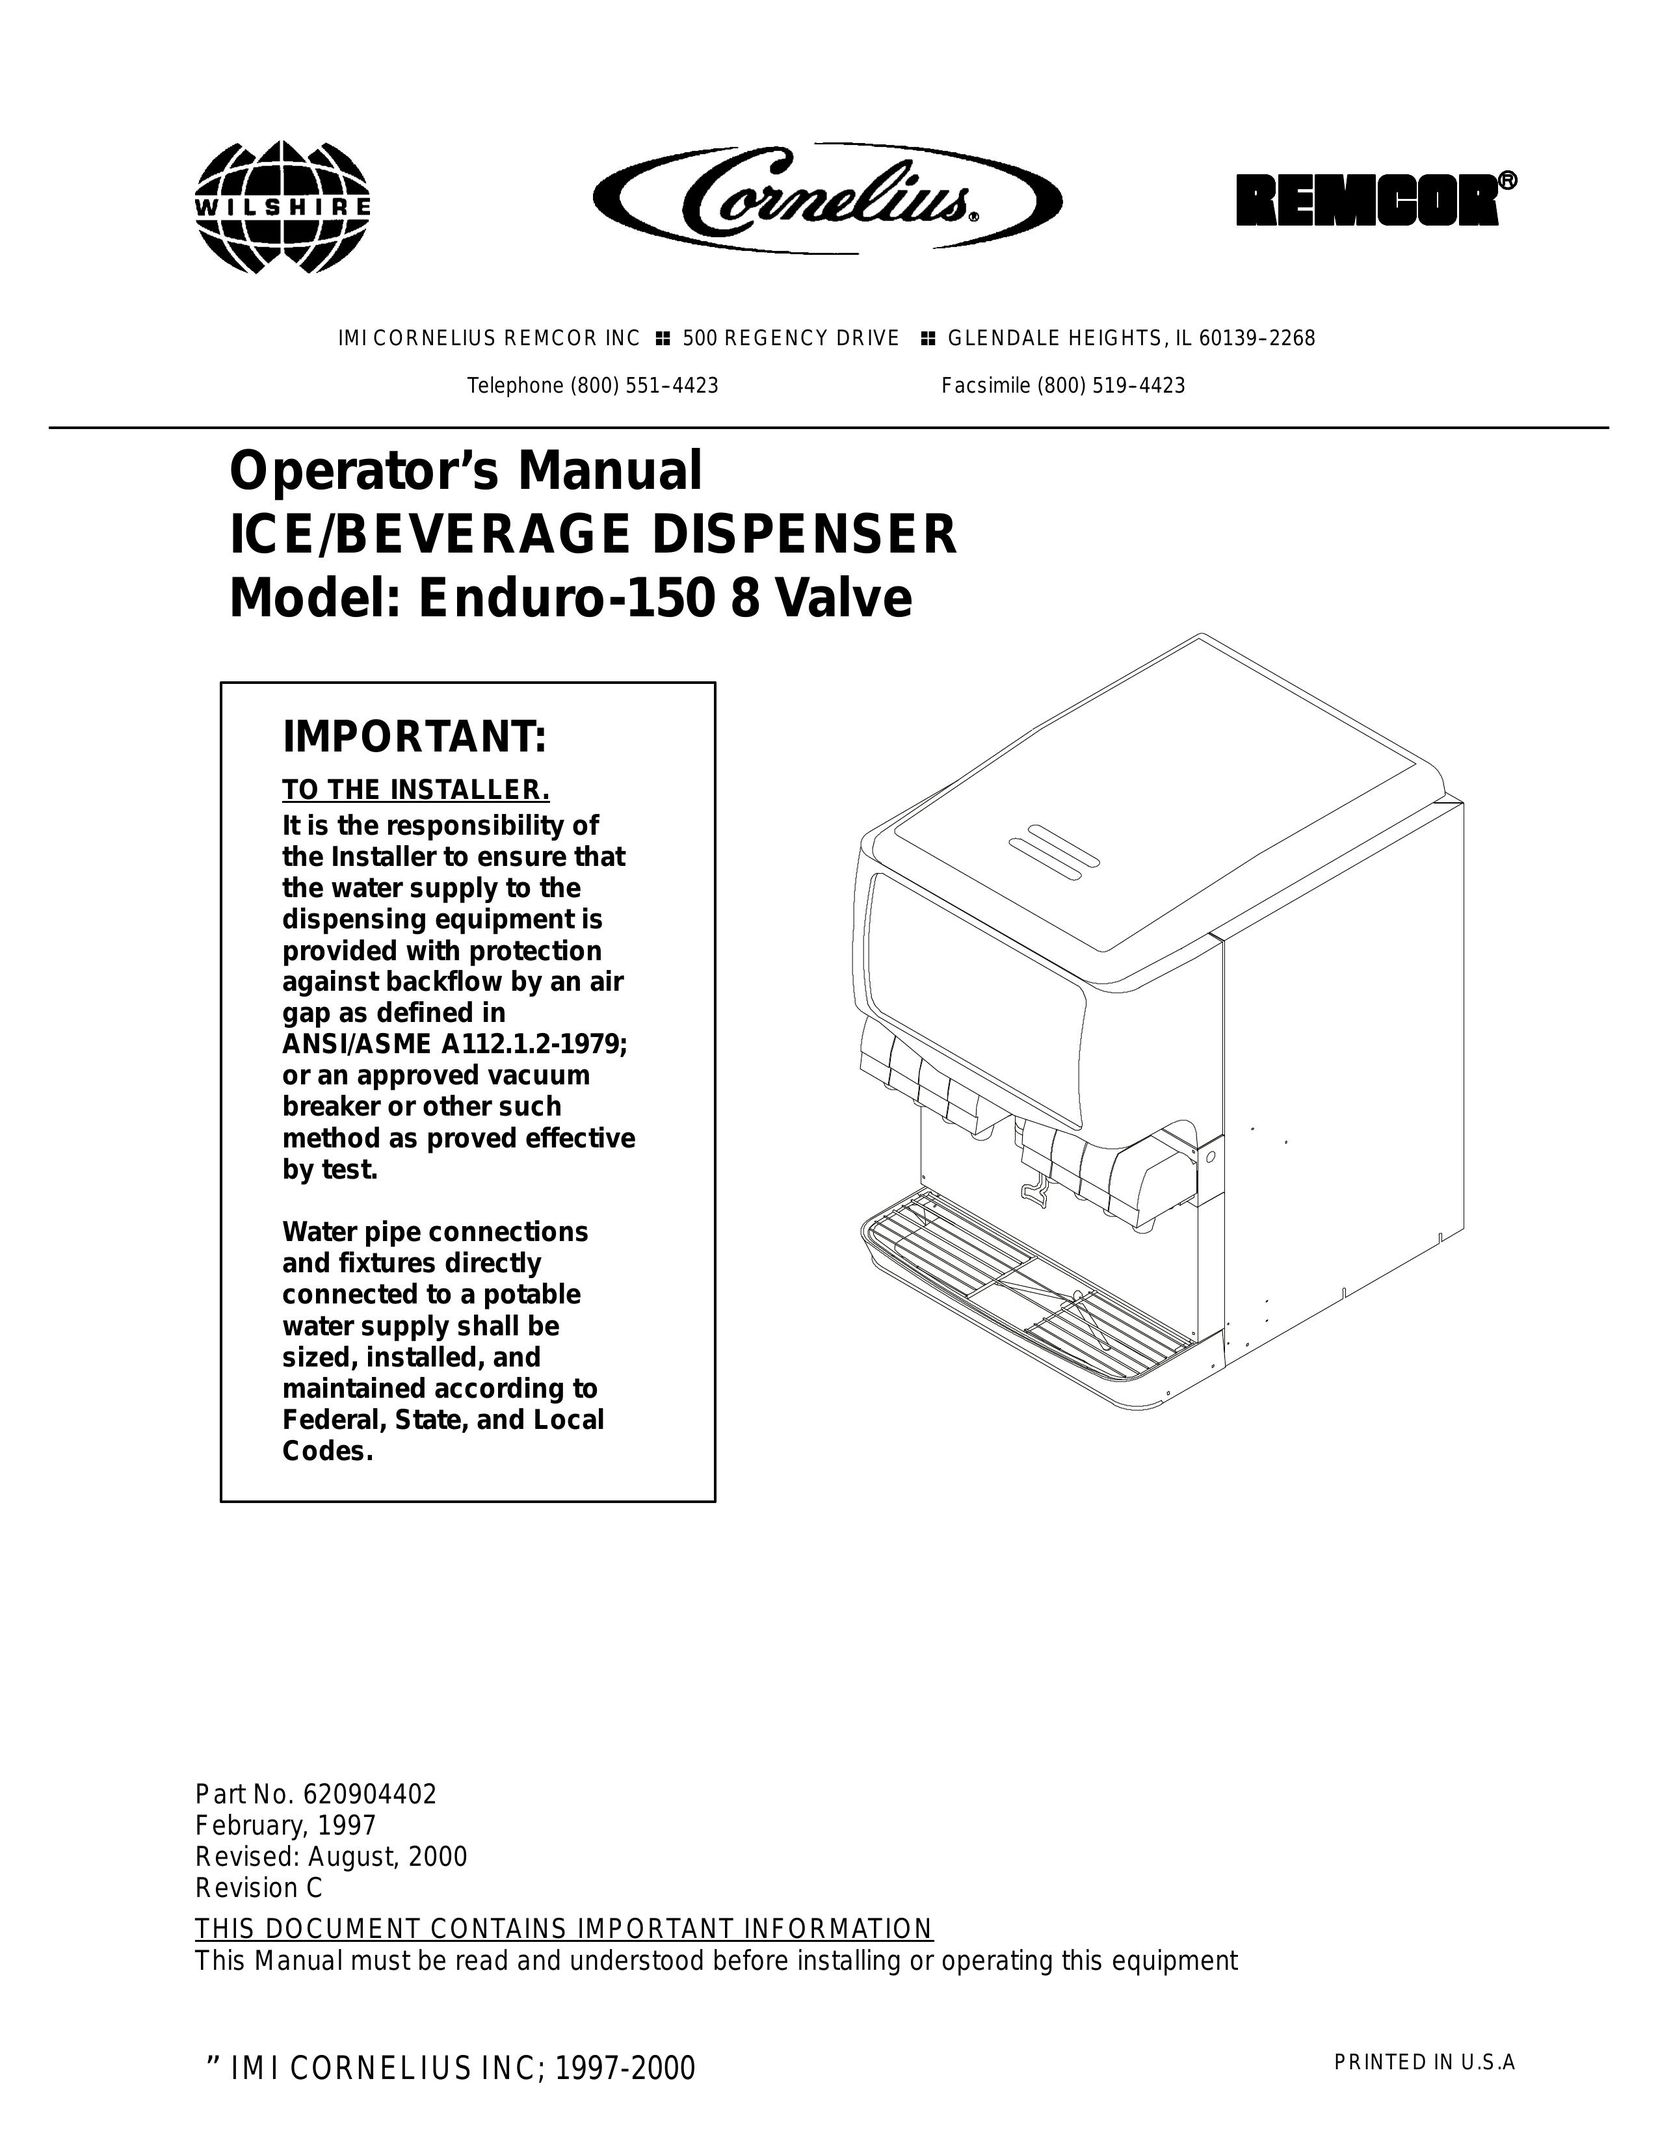 Cornelius 150 8 Valve Beverage Dispenser User Manual